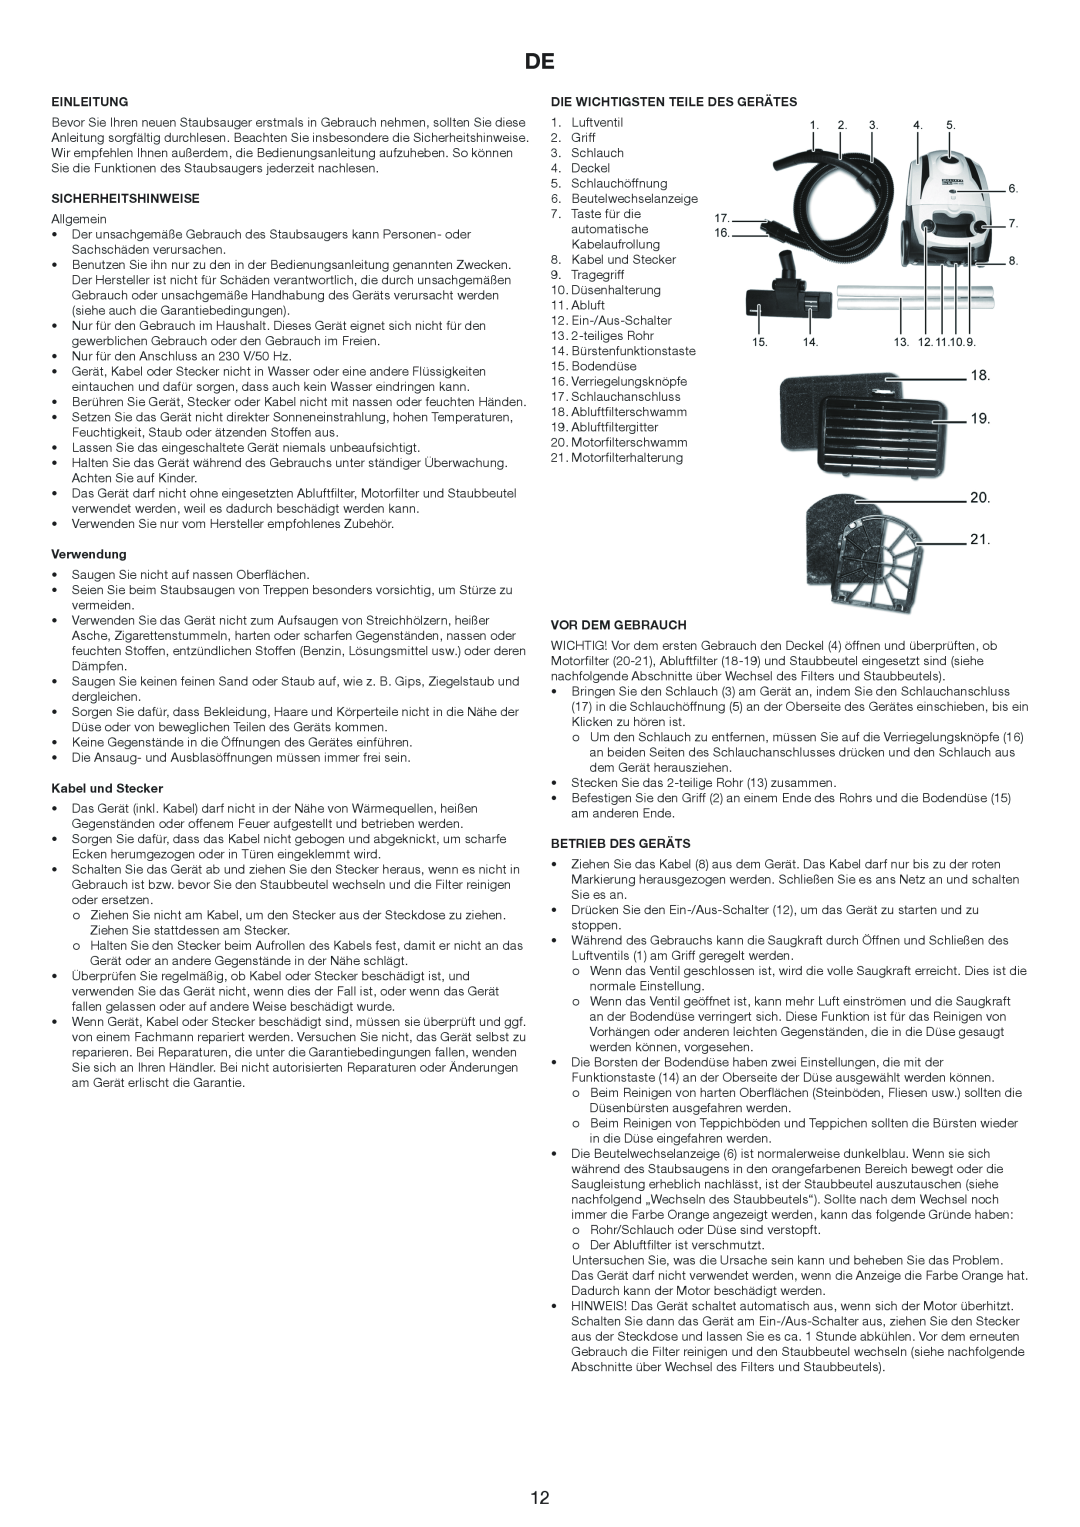 Melissa 640-171 manual Einleitung, Sicherheitshinweise, Verwendung, Kabel und Stecker, Die Wichtigsten Teile Des Gerätes 